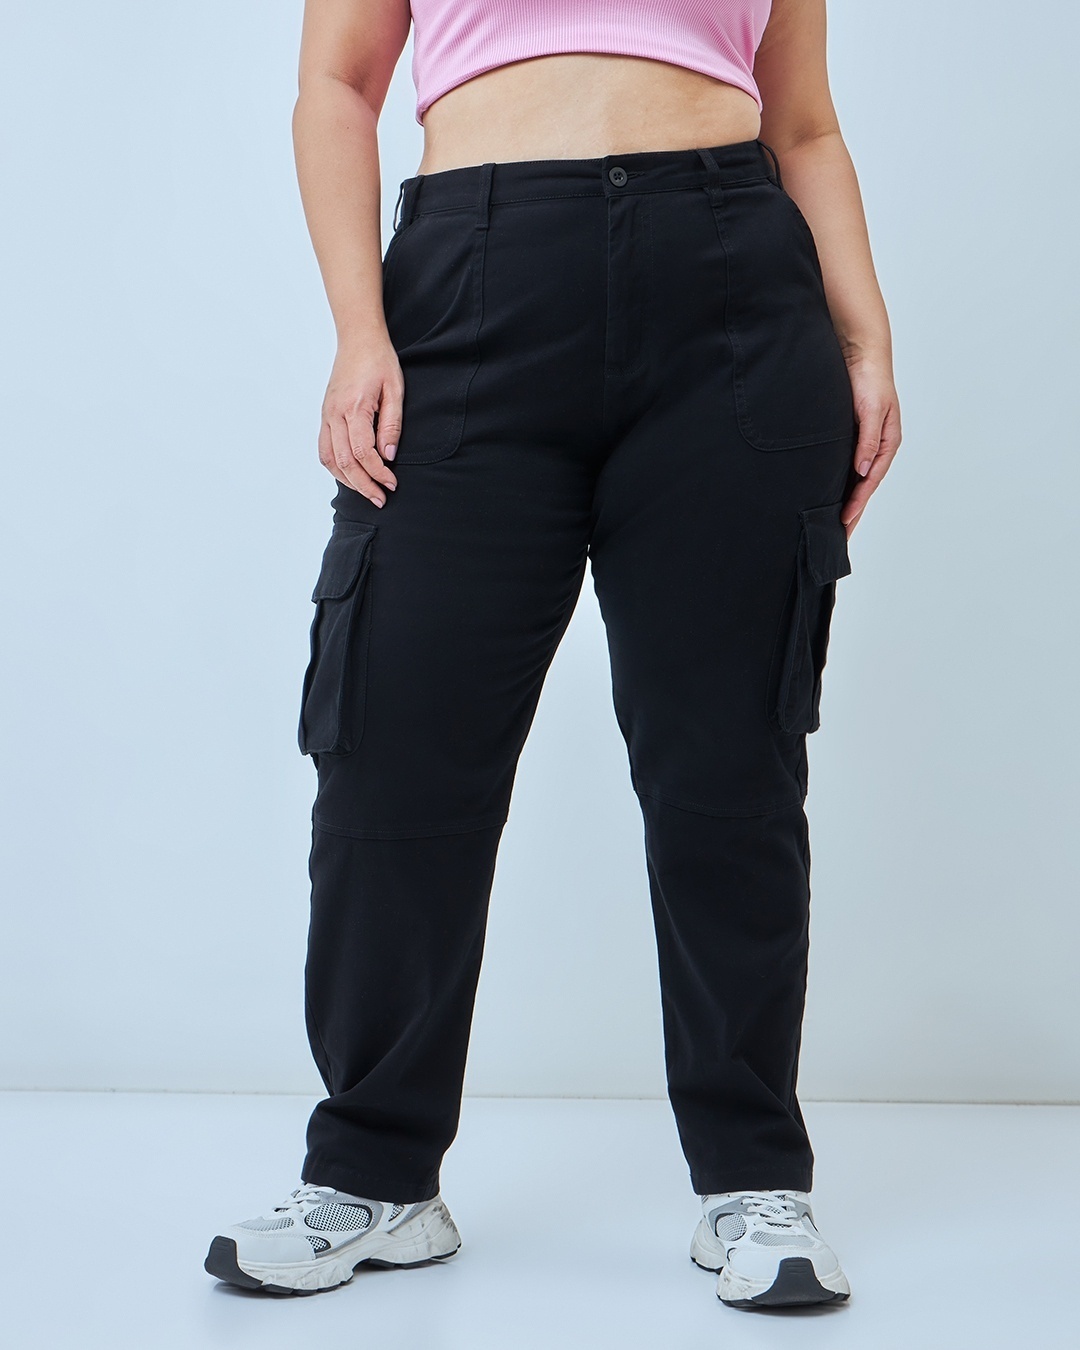 Buy Women's Black Plus Size Cargo Pants Online at Bewakoof